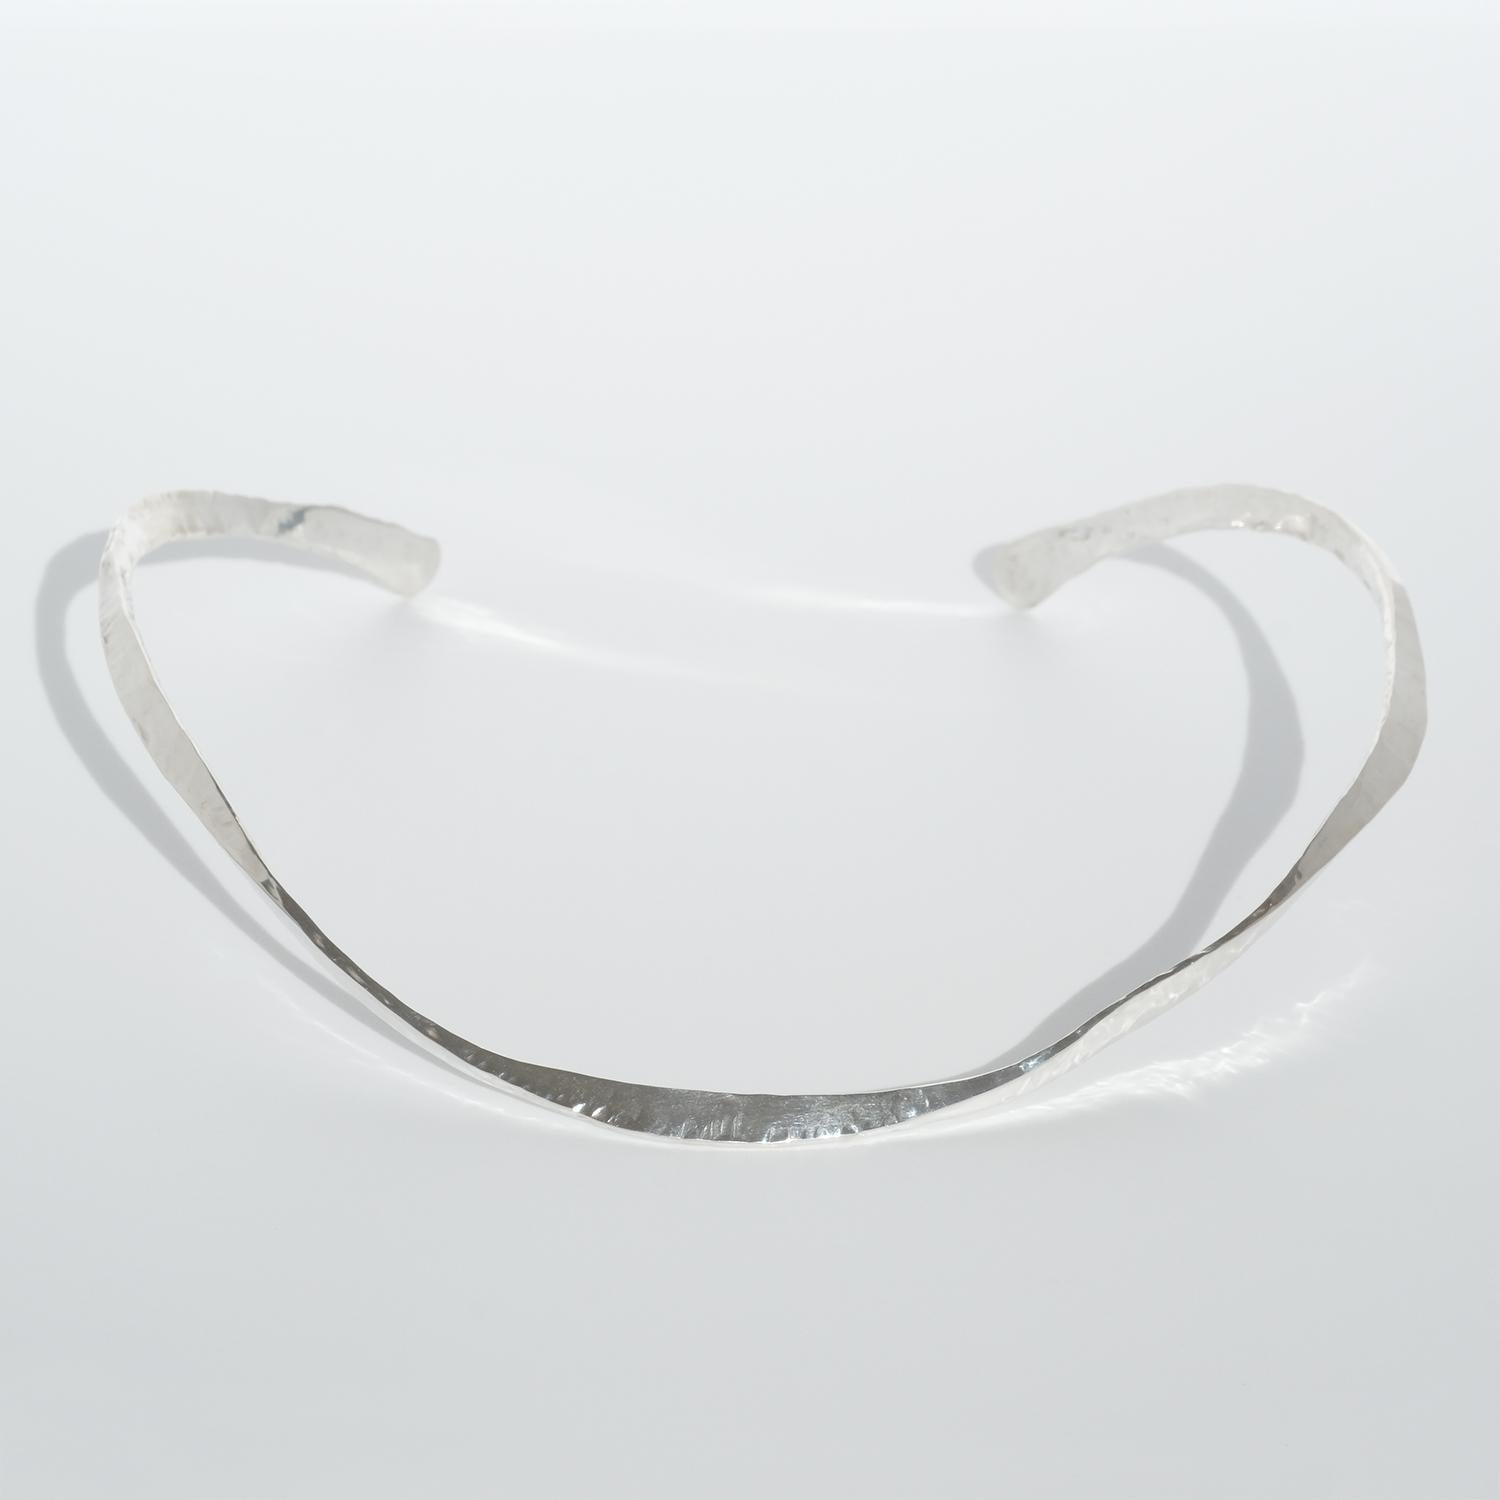 Dieser Halsring aus Silber hat eine schöne, glänzende, bearbeitete Oberfläche. Die Form des Halsrings ist insofern besonders, als dass er gedreht ist.

Dieser Halsring ist sowohl für gesellschaftliche Anlässe als auch für die Alltagsgarderobe